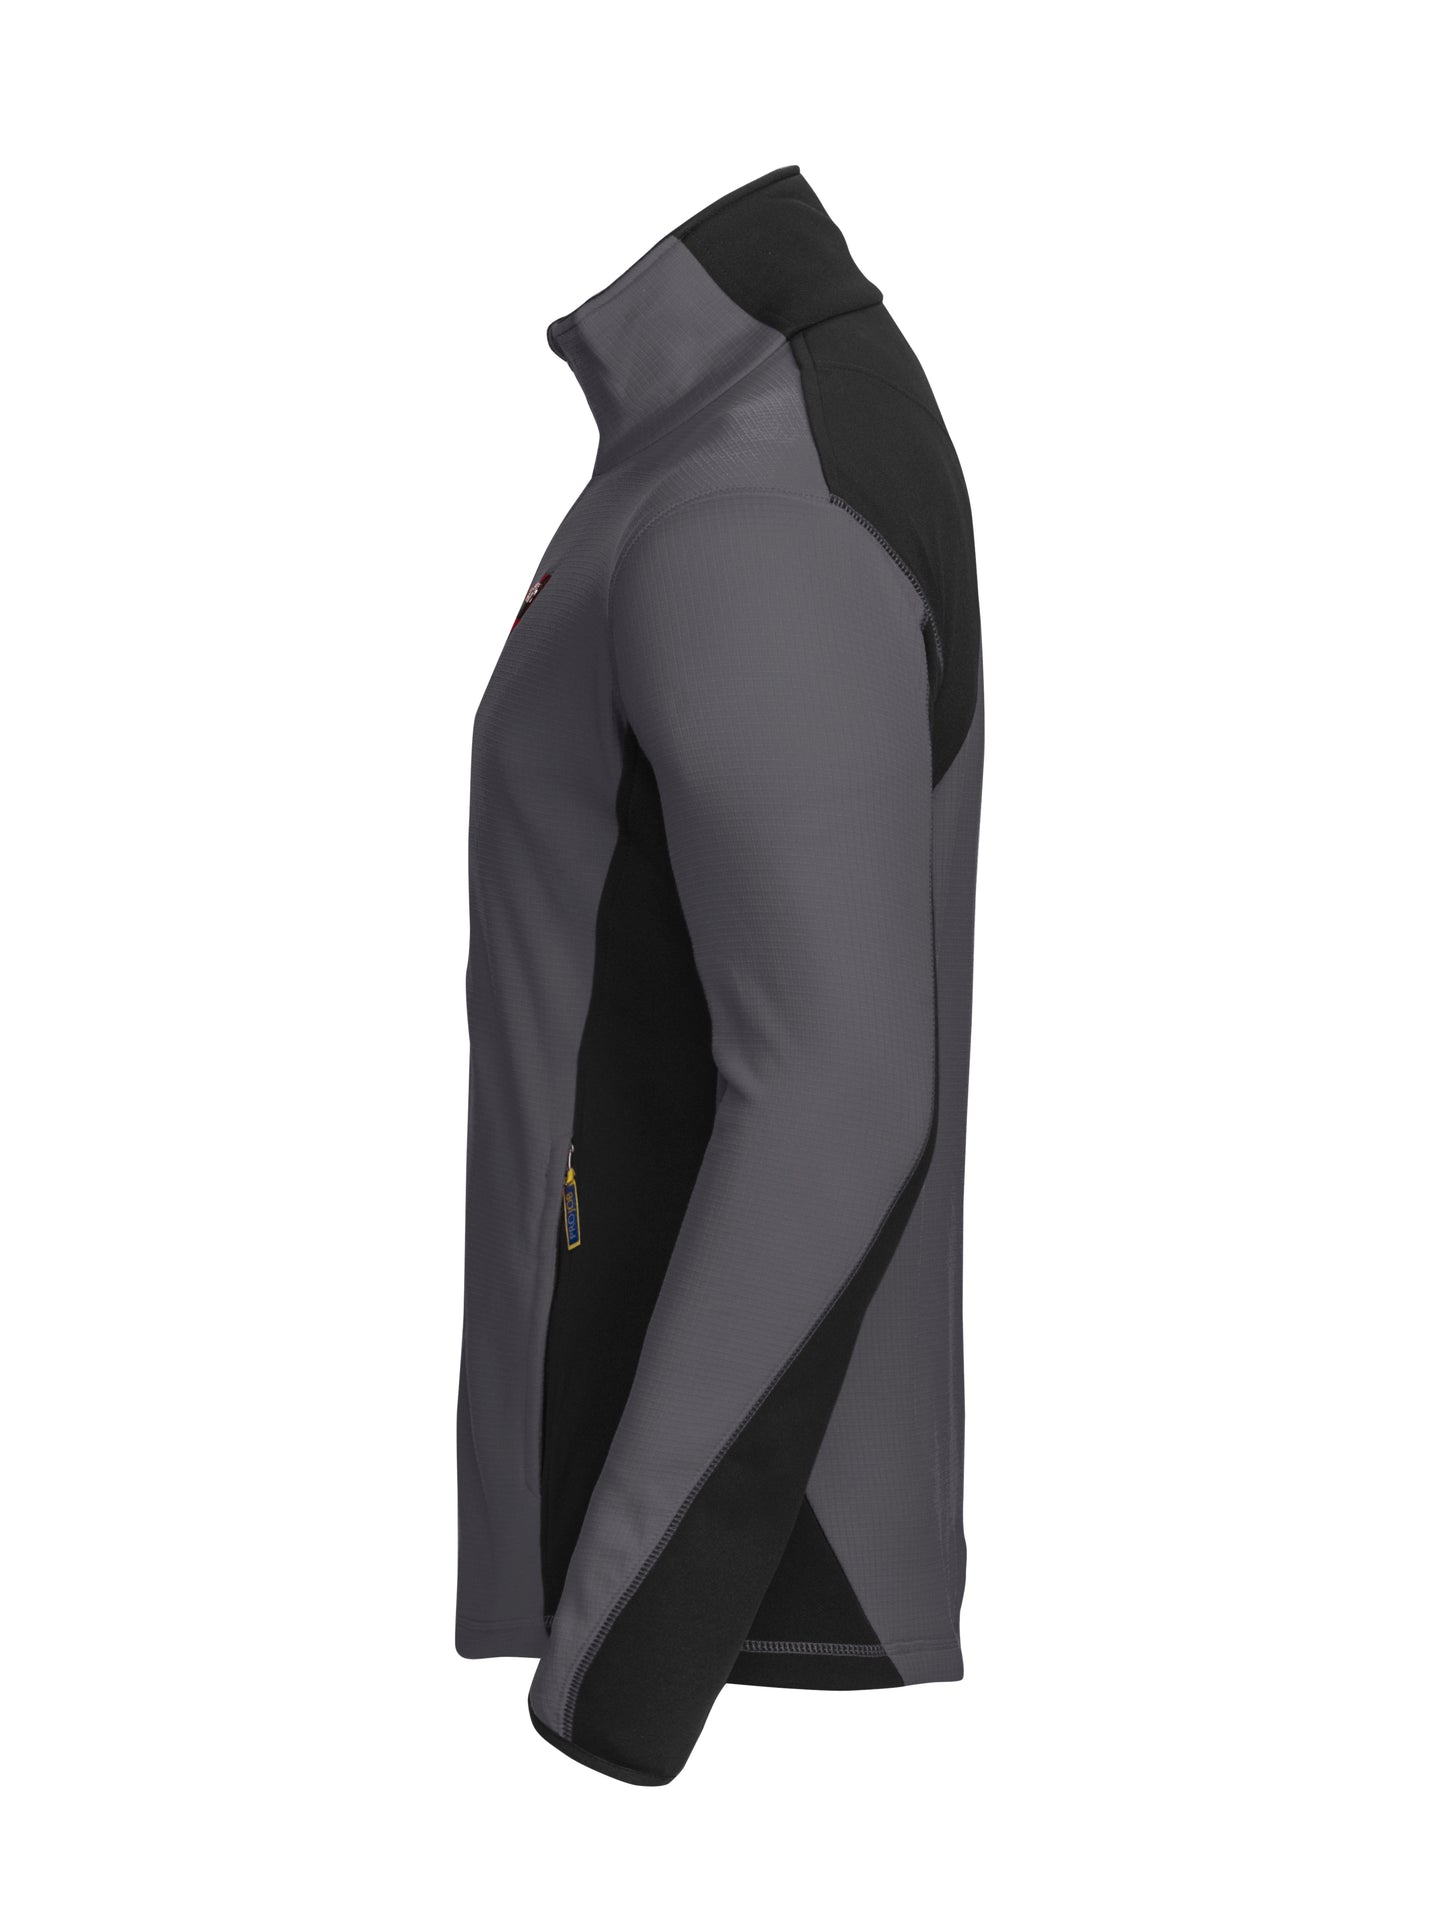 ProJob Microfleece Jacket | Fleece Lined Zip-Up Top | Mens Workwear | 3 Colours | XS-4XL